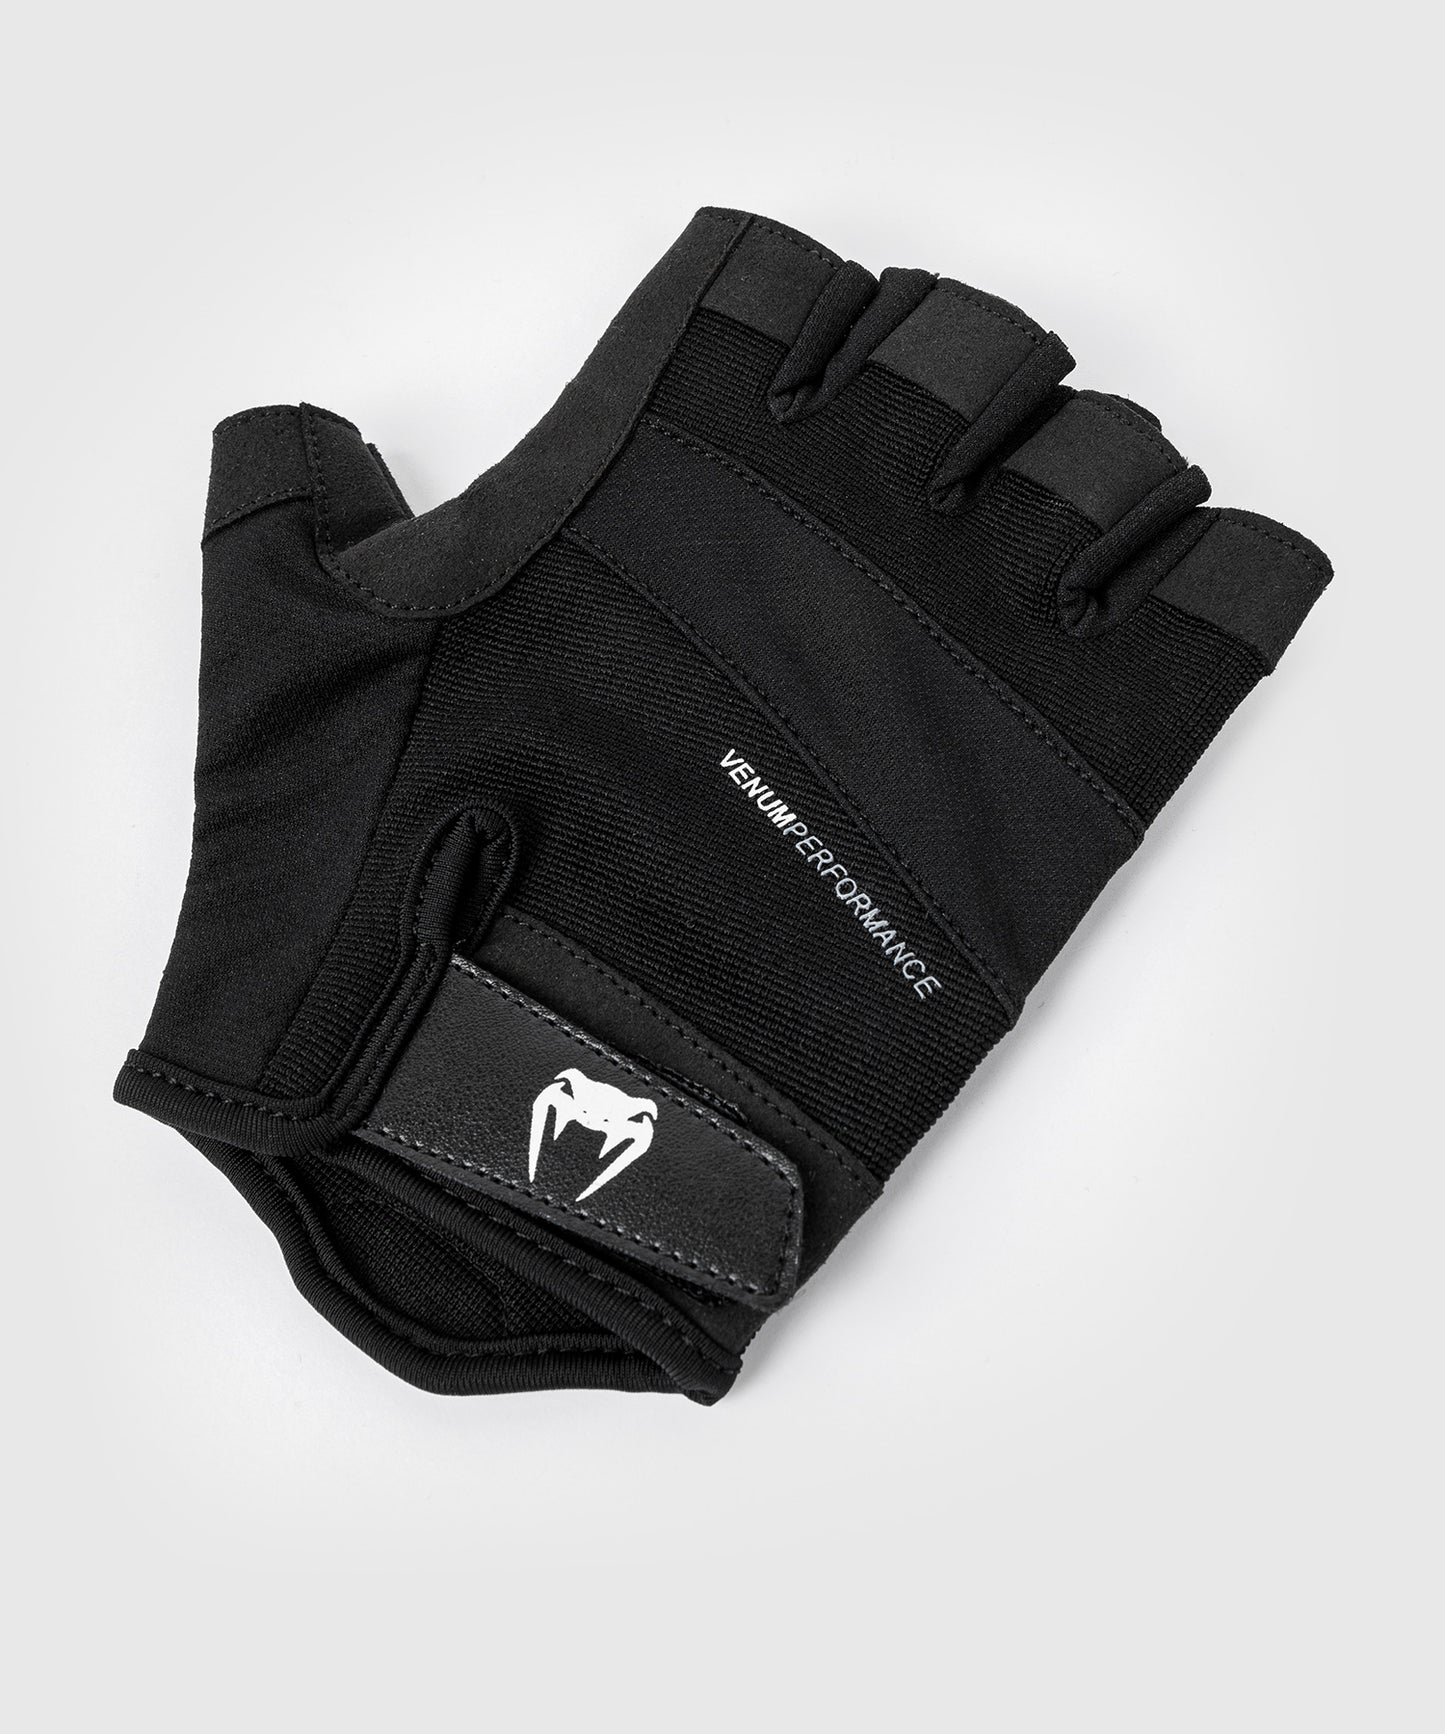 Venum HyperLift 2.0 Weightlifting Gloves